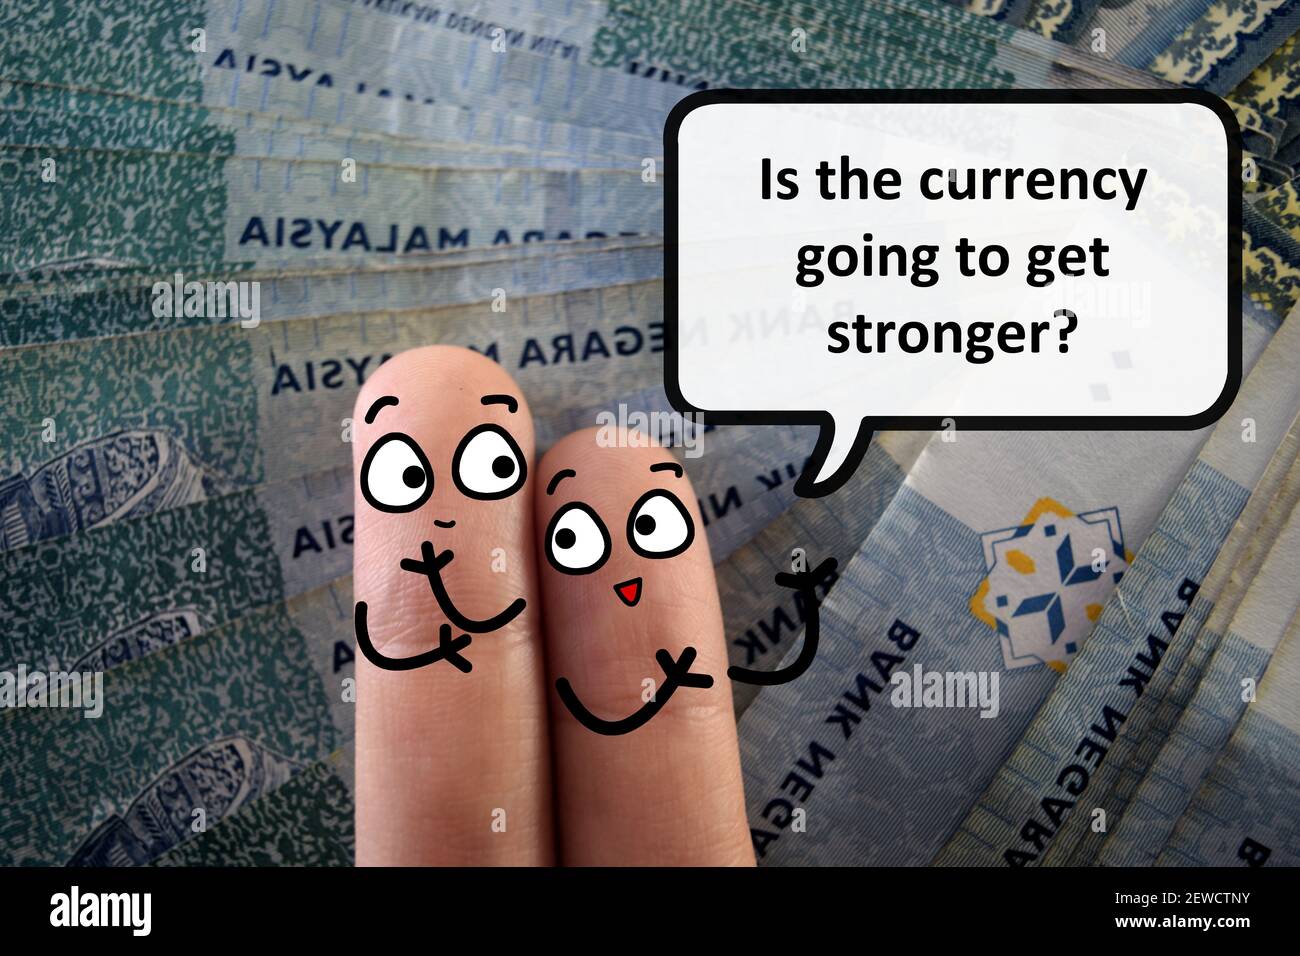 Zwei Finger sind als zwei Personen dekoriert. Einer von ihnen fragt einen anderen, ob die Währung stärker werden wird. Stockfoto